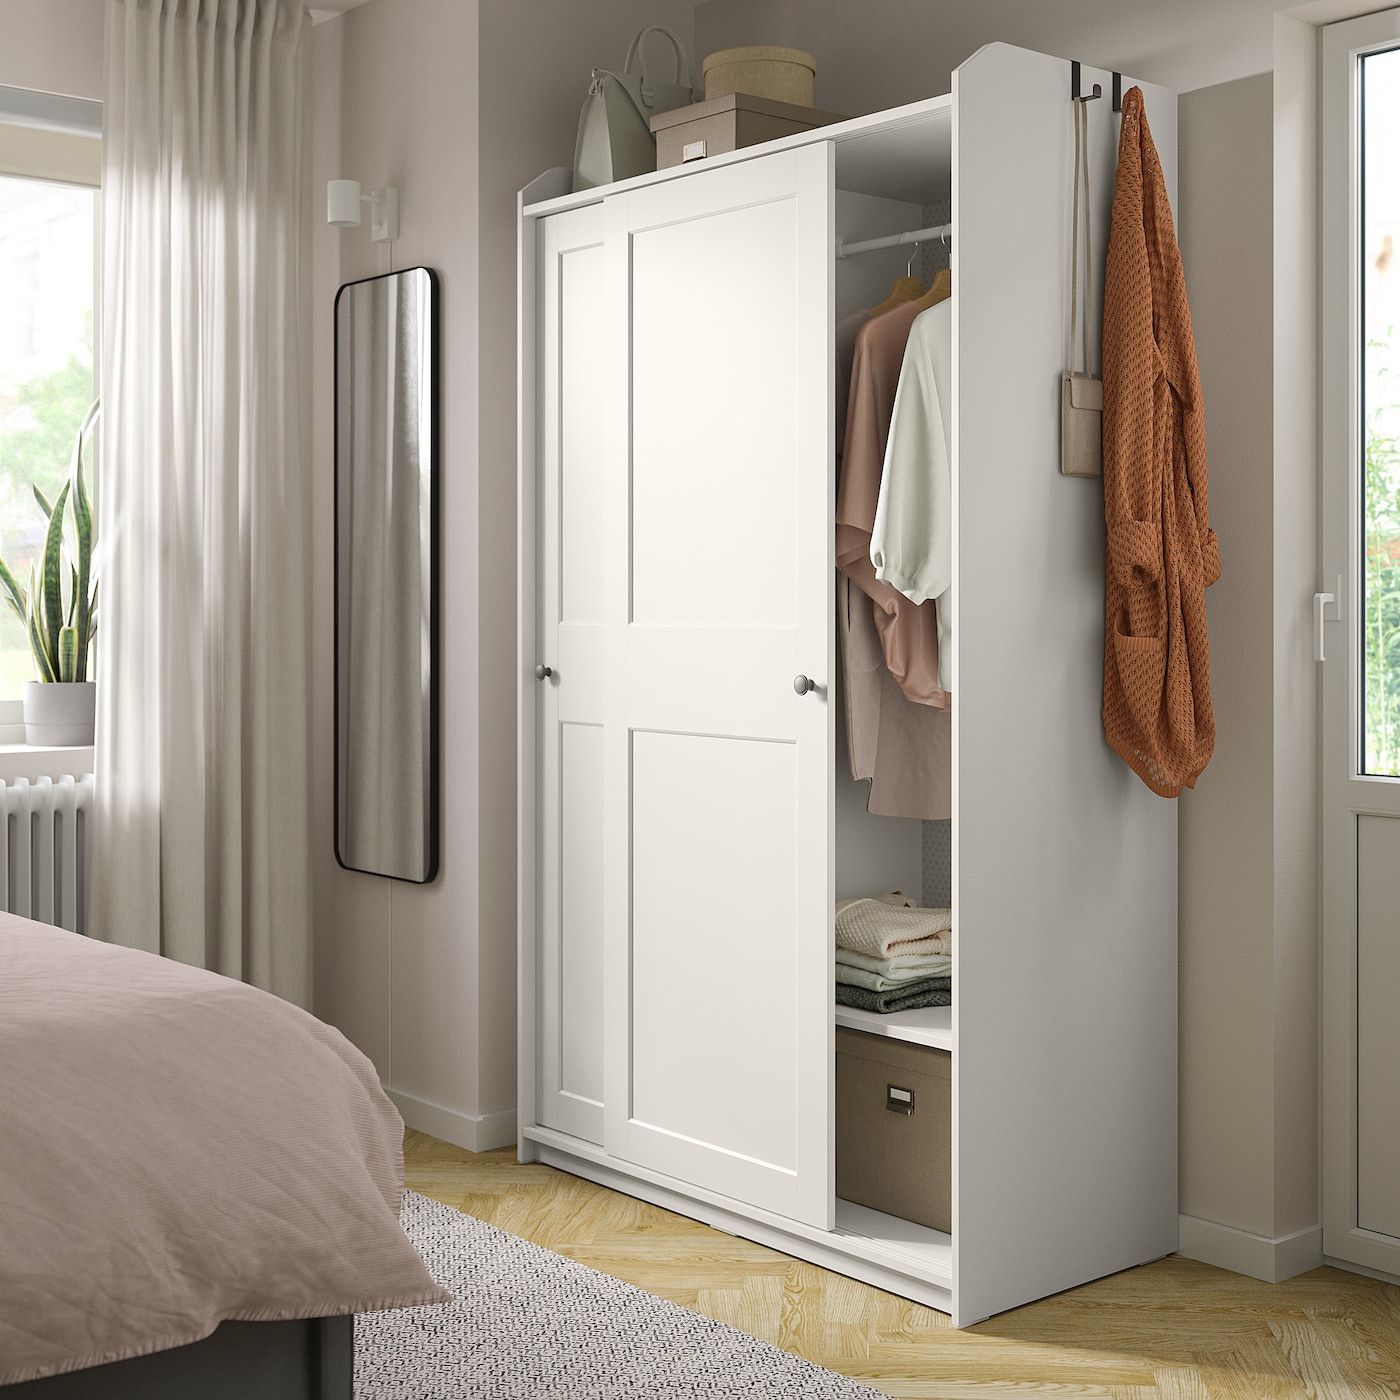 Hauga Wardrobe With Sliding Doors, White, 461/2x215/8x783/8" – Ikea Regarding 5 Door Wardrobes Bedroom Furniture (View 4 of 15)